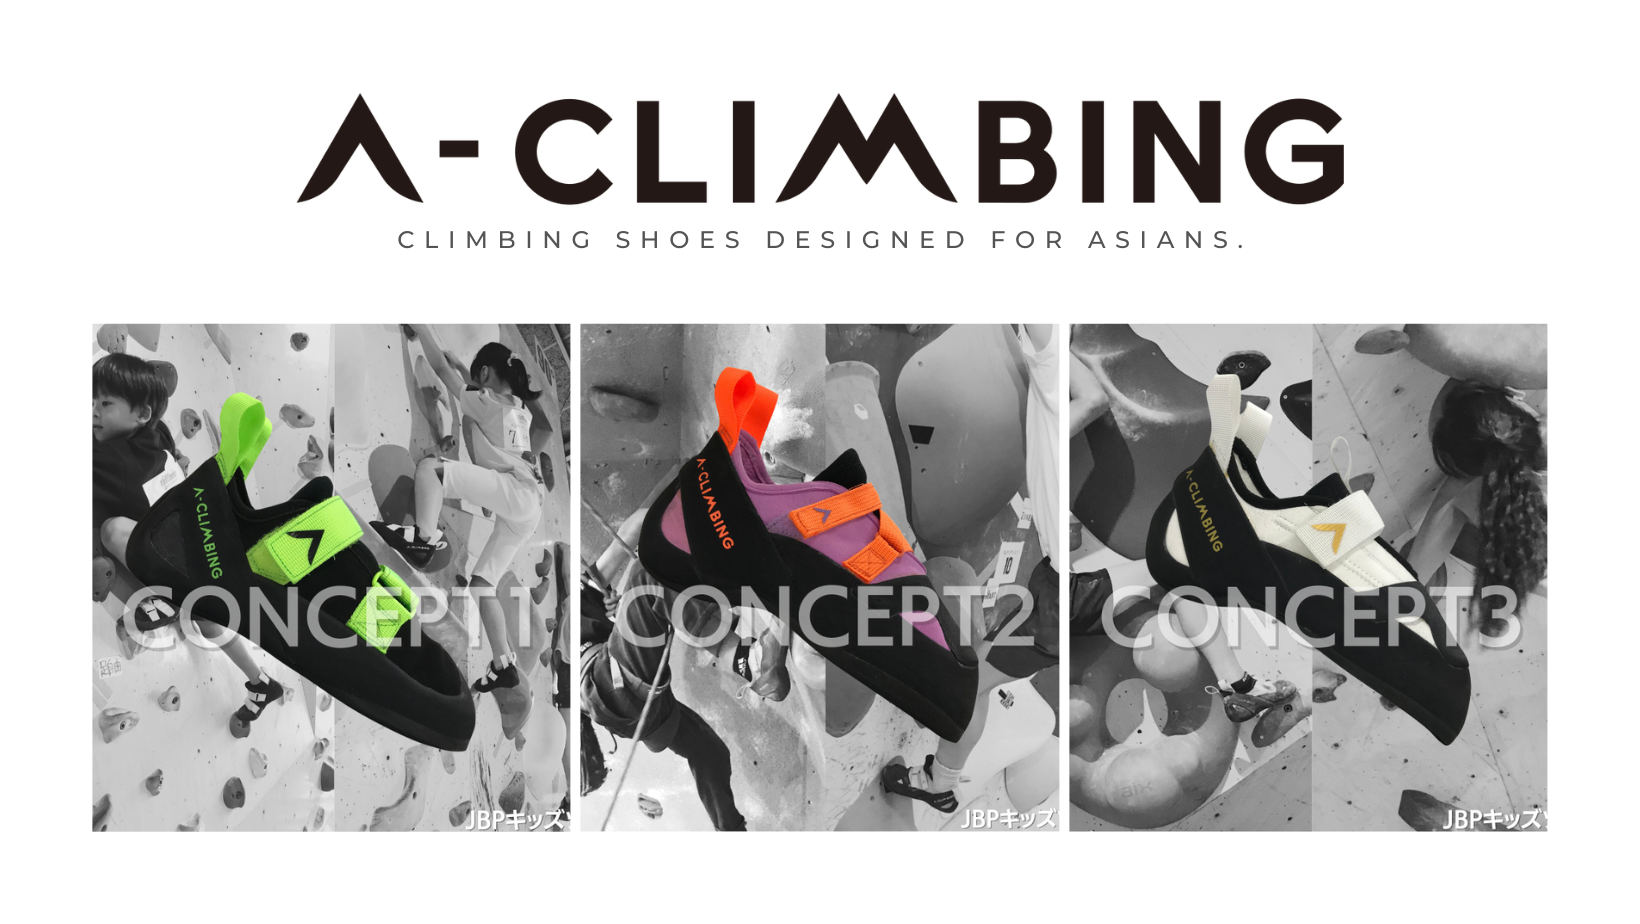 A-CLIMBING | アジアの人たちへ向けたクライミングシューズブランド